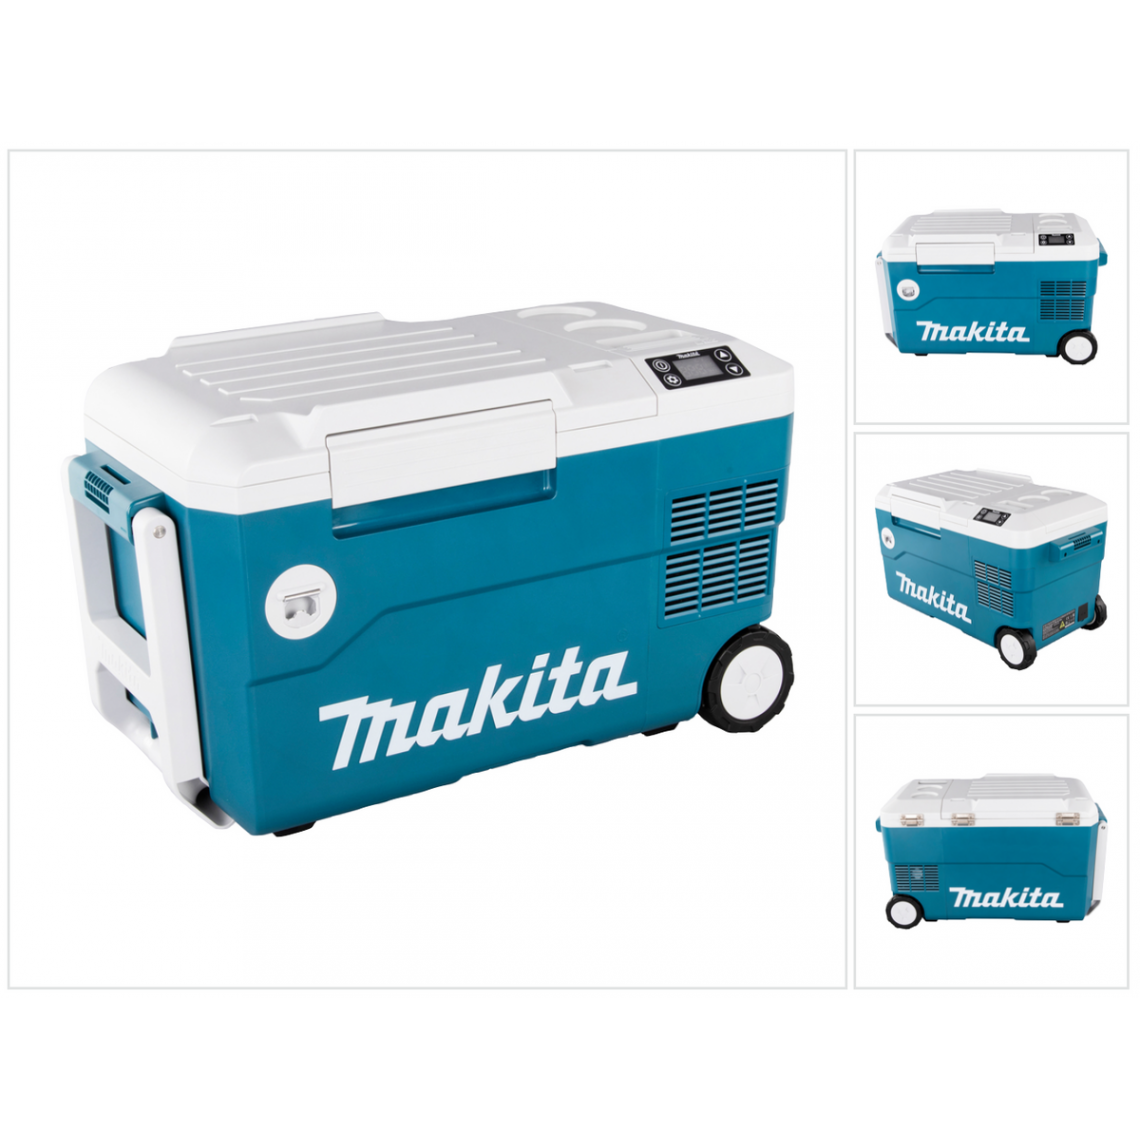 Makita - Makita DCW 180 Z Coffret pour chauffage et de refroidissement 36 V ( 2x 18 V ) 20 L sans fil - sans batterie, sans chargeur - Autres équipements modulaires